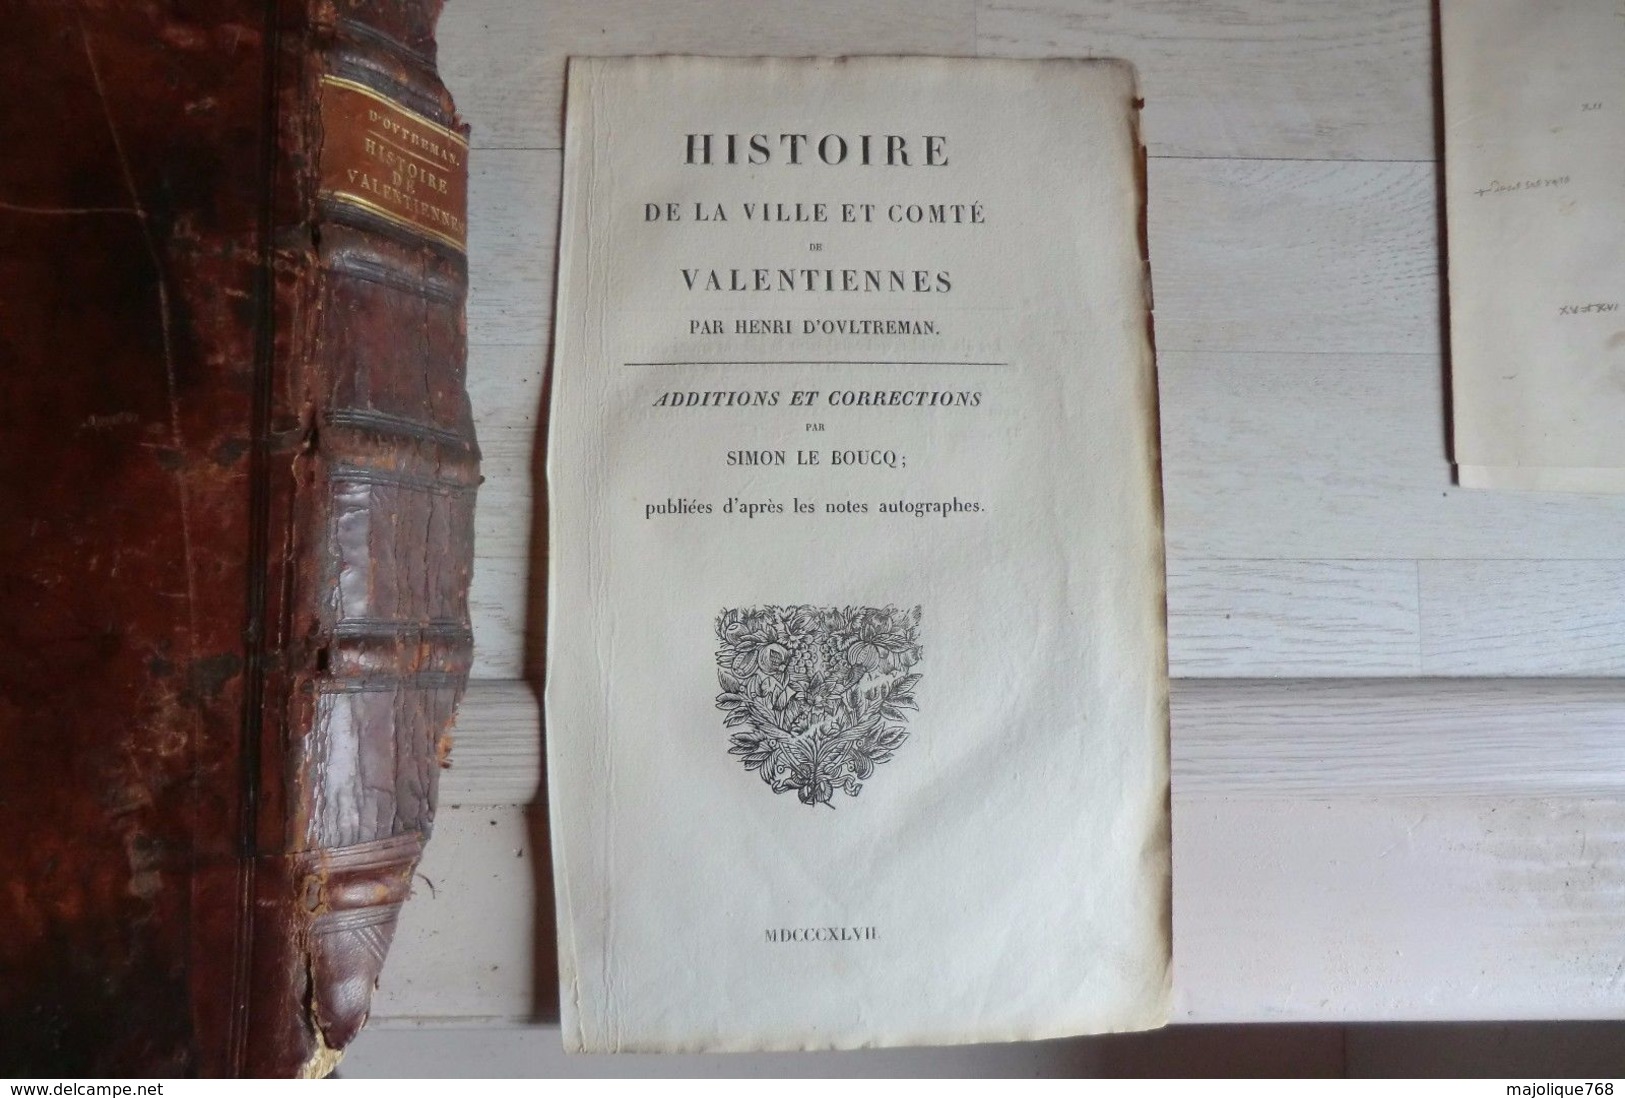 histoire de la ville et comté de valentiennes par Henri d'outreman 1639 - à restaurer voir photos -